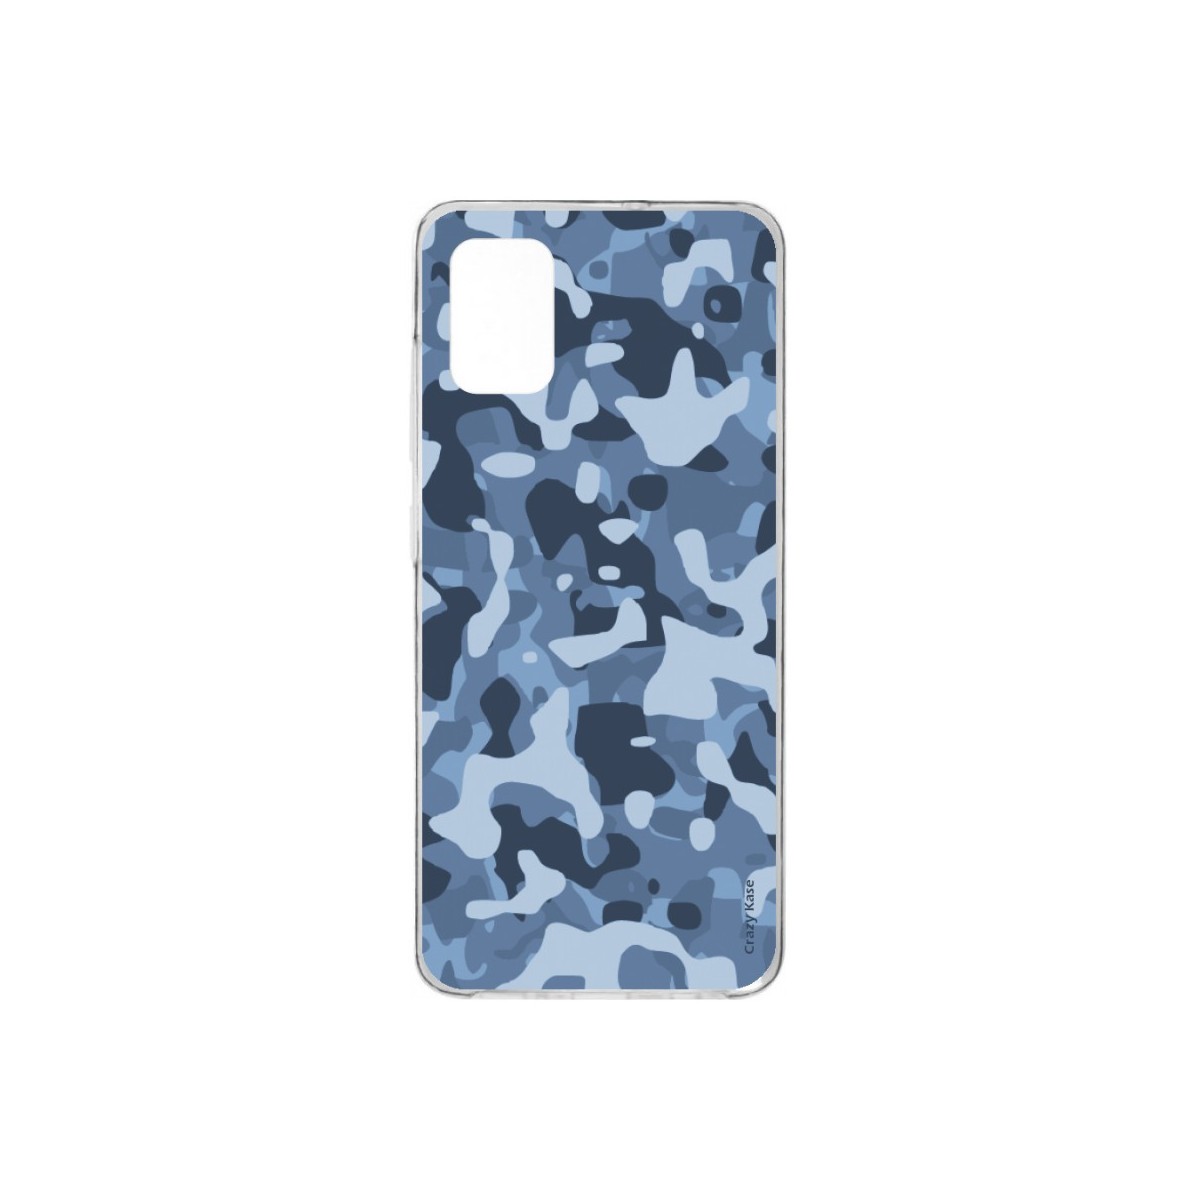 Coque pour Samsung Galaxy A41 souple Camouflage militaire bleu Crazy Kase